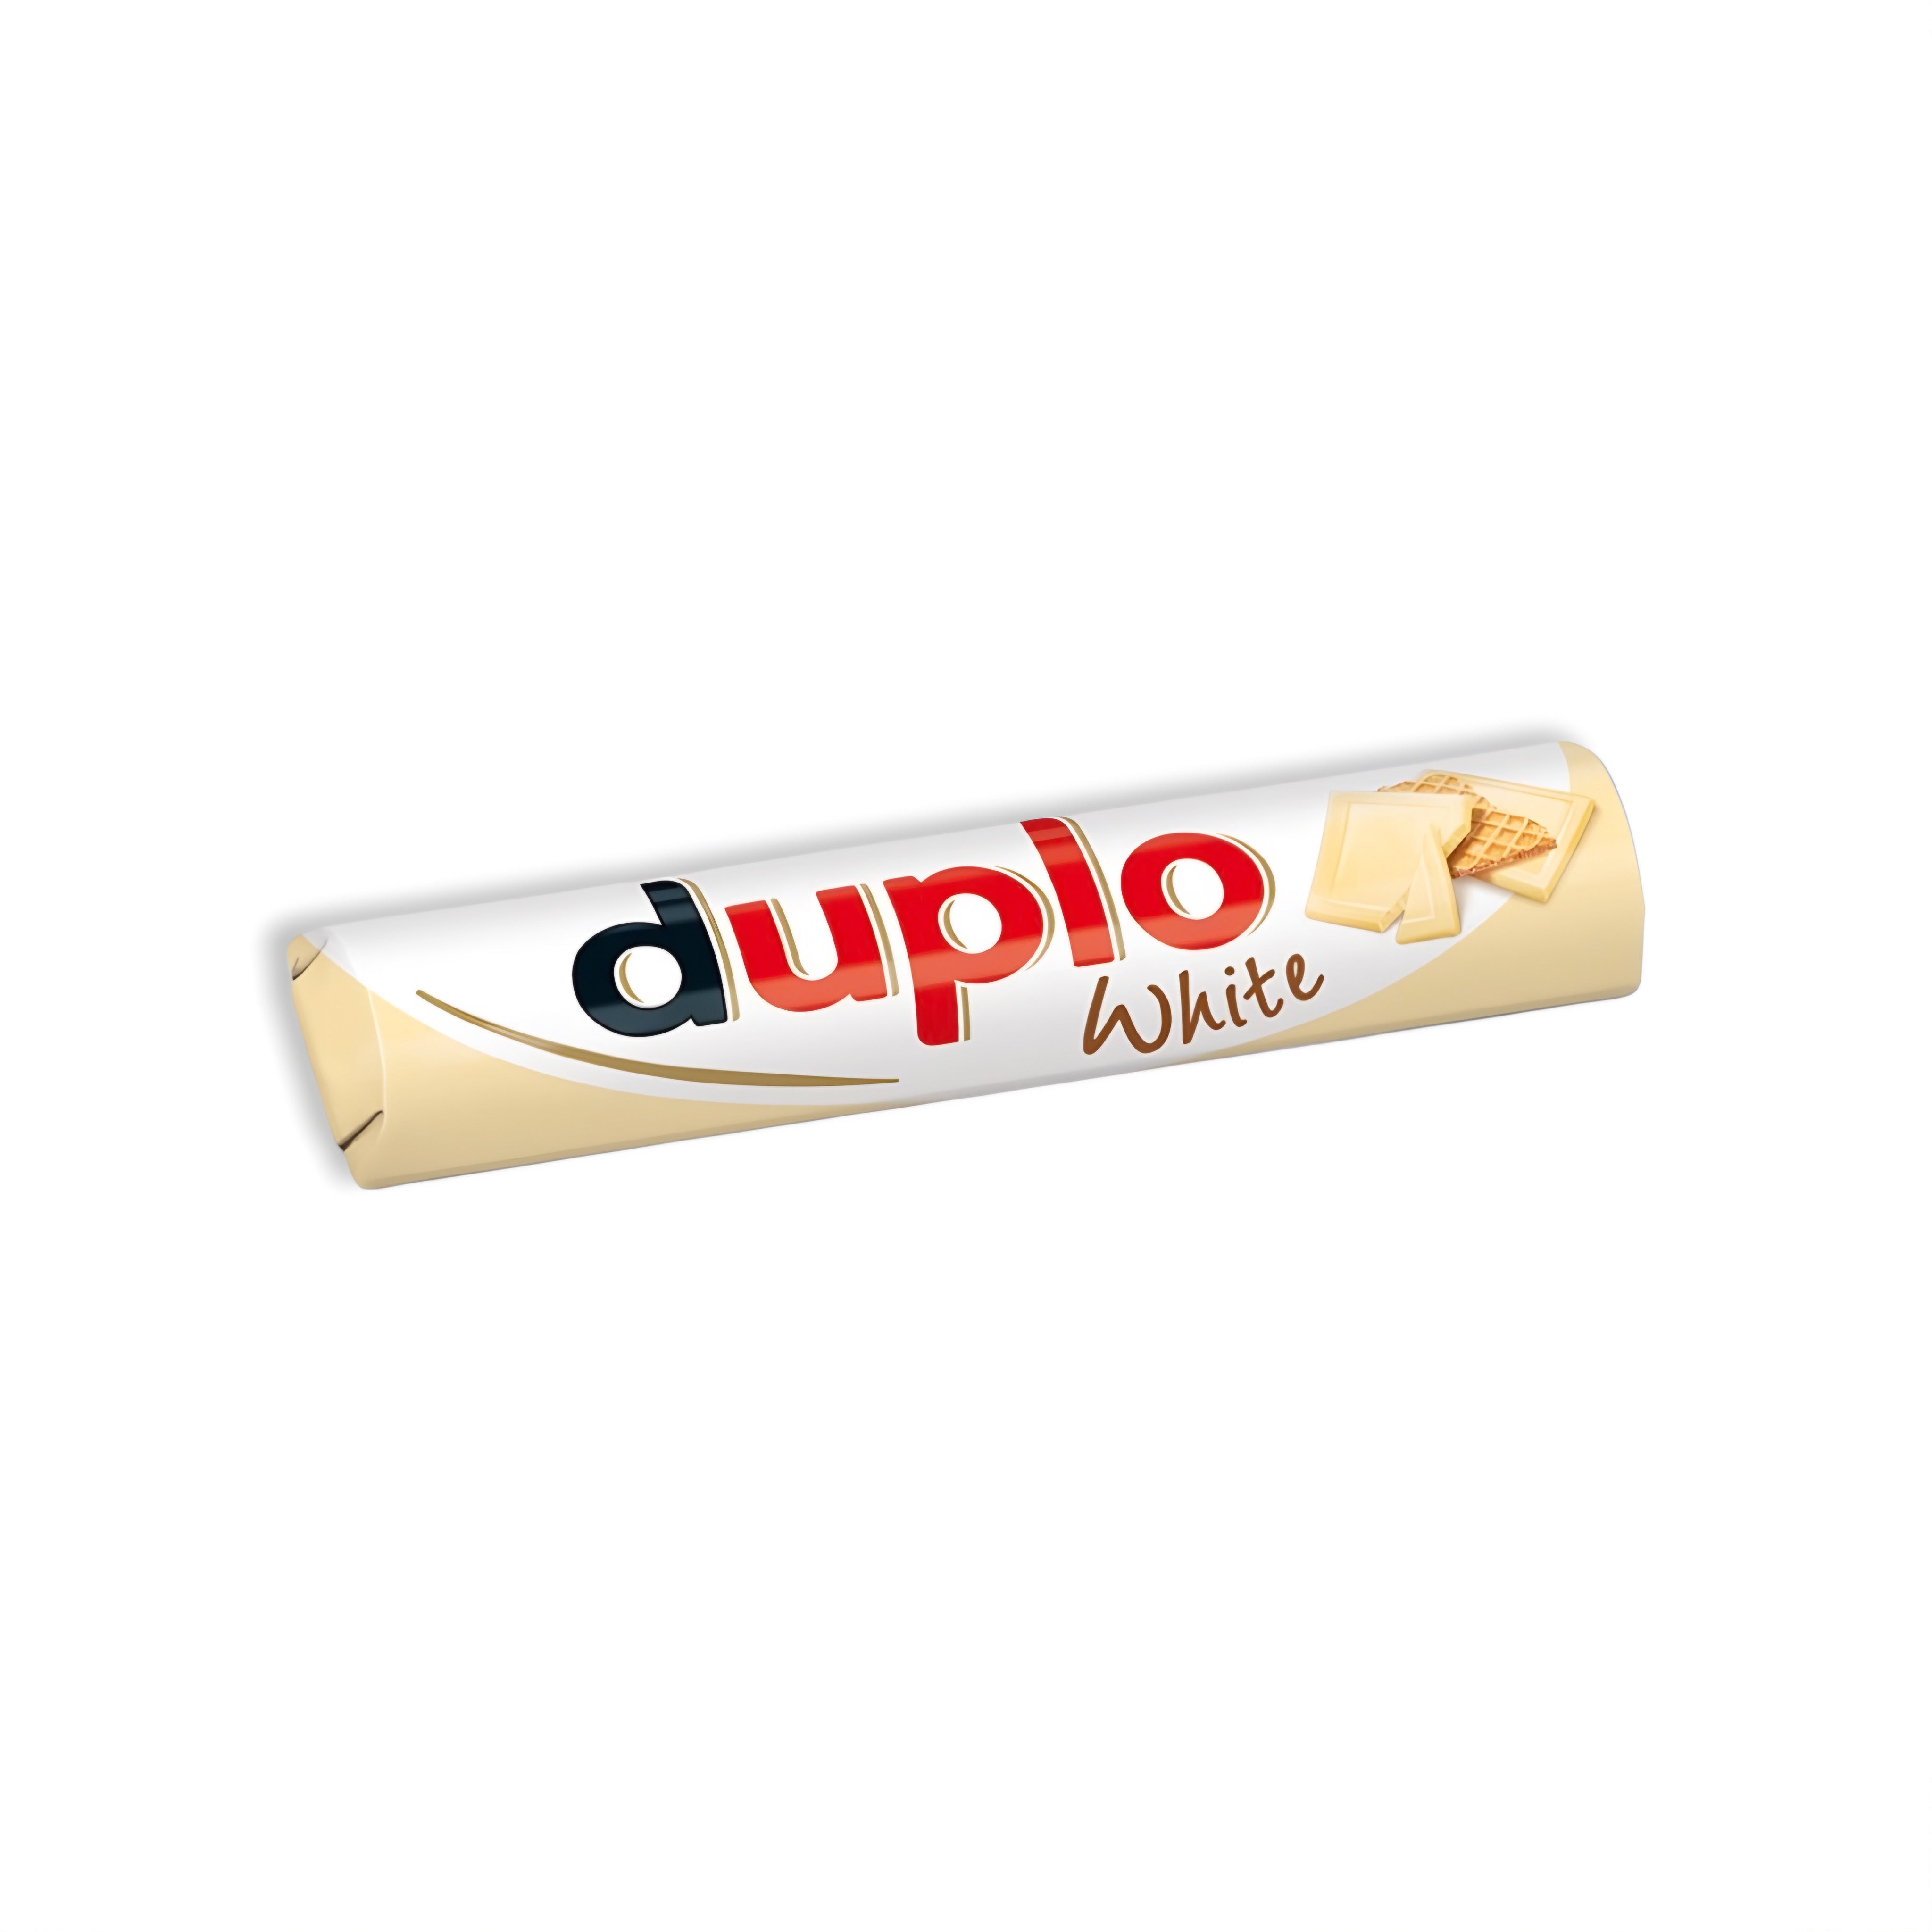 Duplo - White